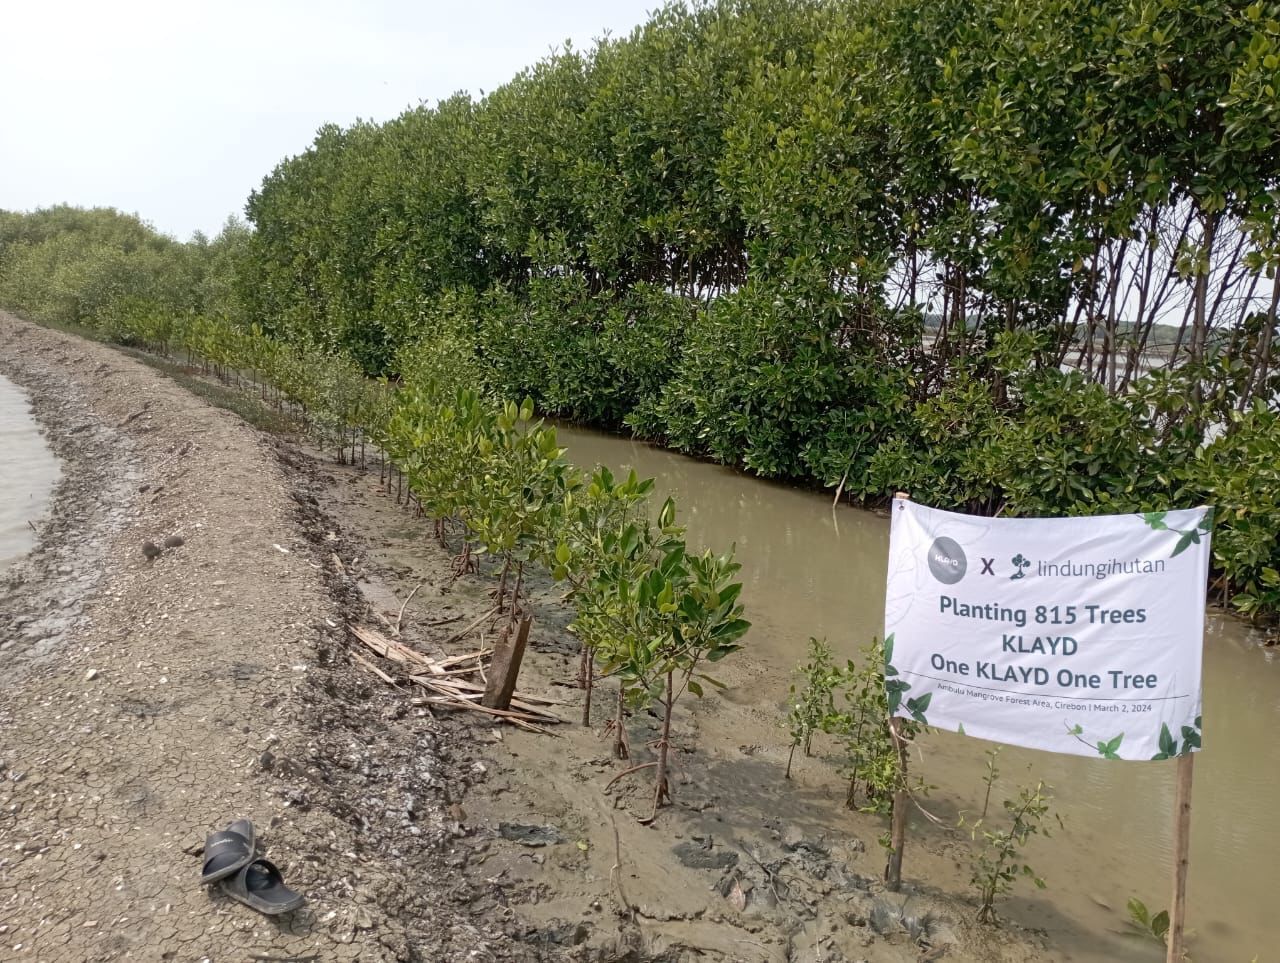 Inisiasi penghijauan One KLAYD One Tree, berhasil menanam 815 bibit mangrove di kawasan Hutan Mangrove Ambulu.